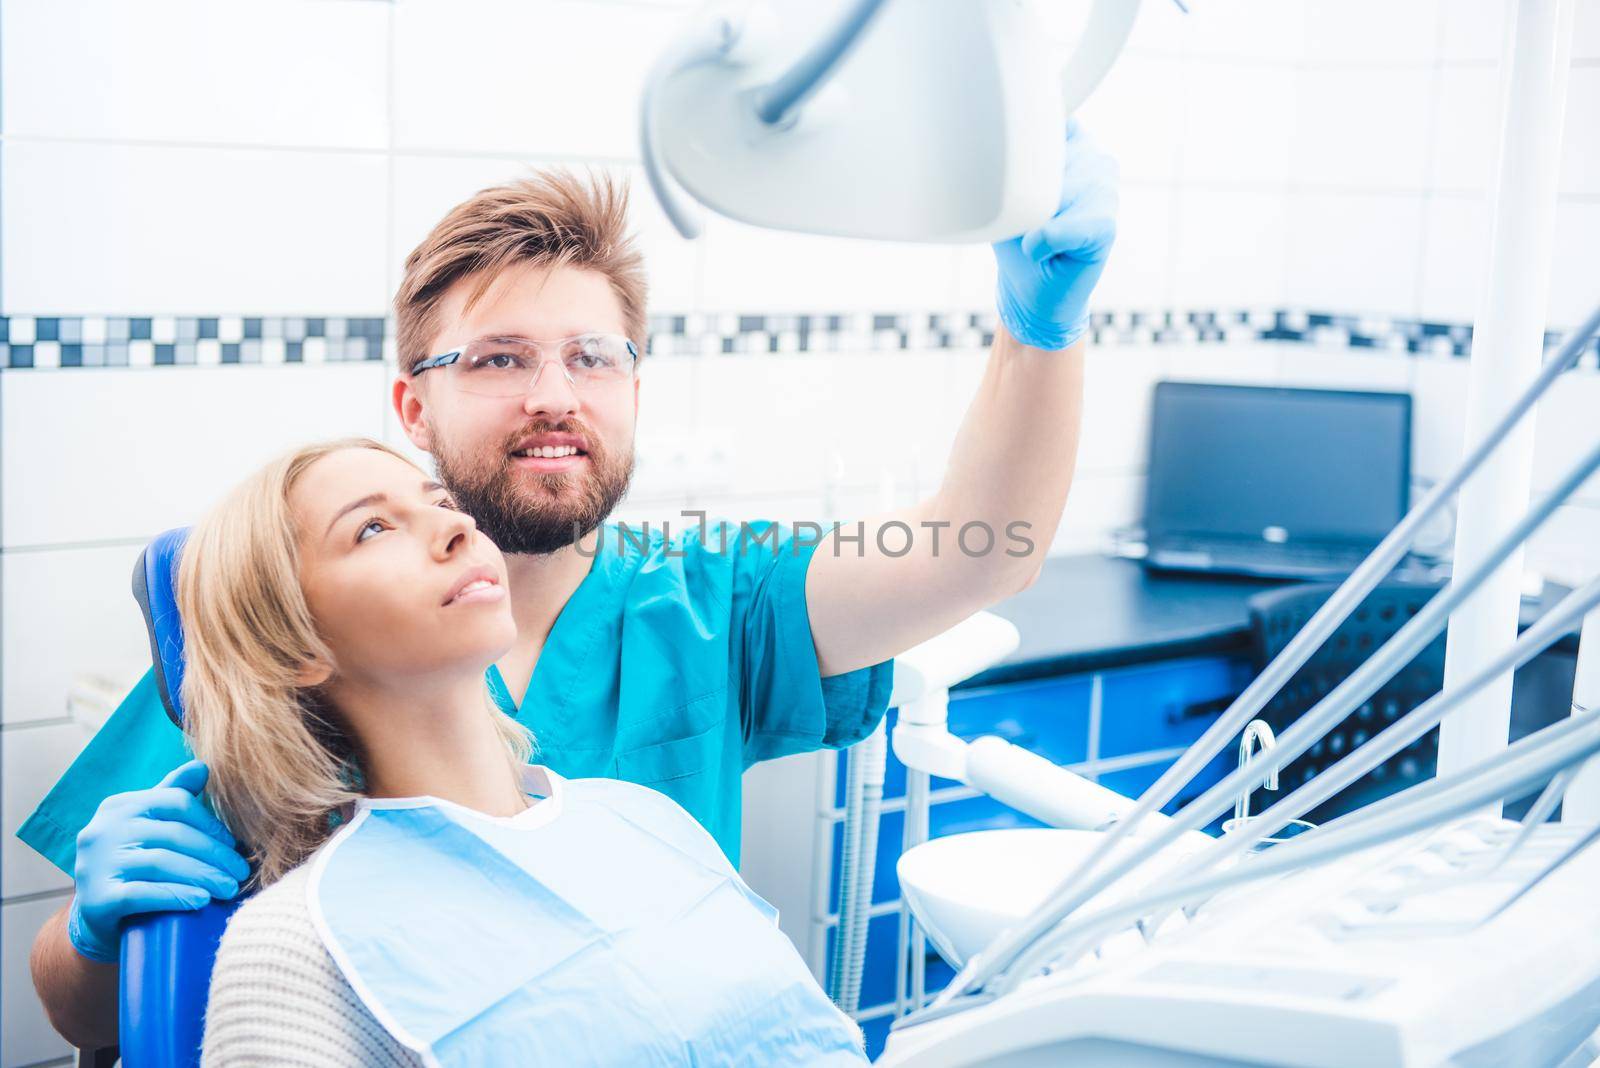 Dentist holding special lamp by GekaSkr